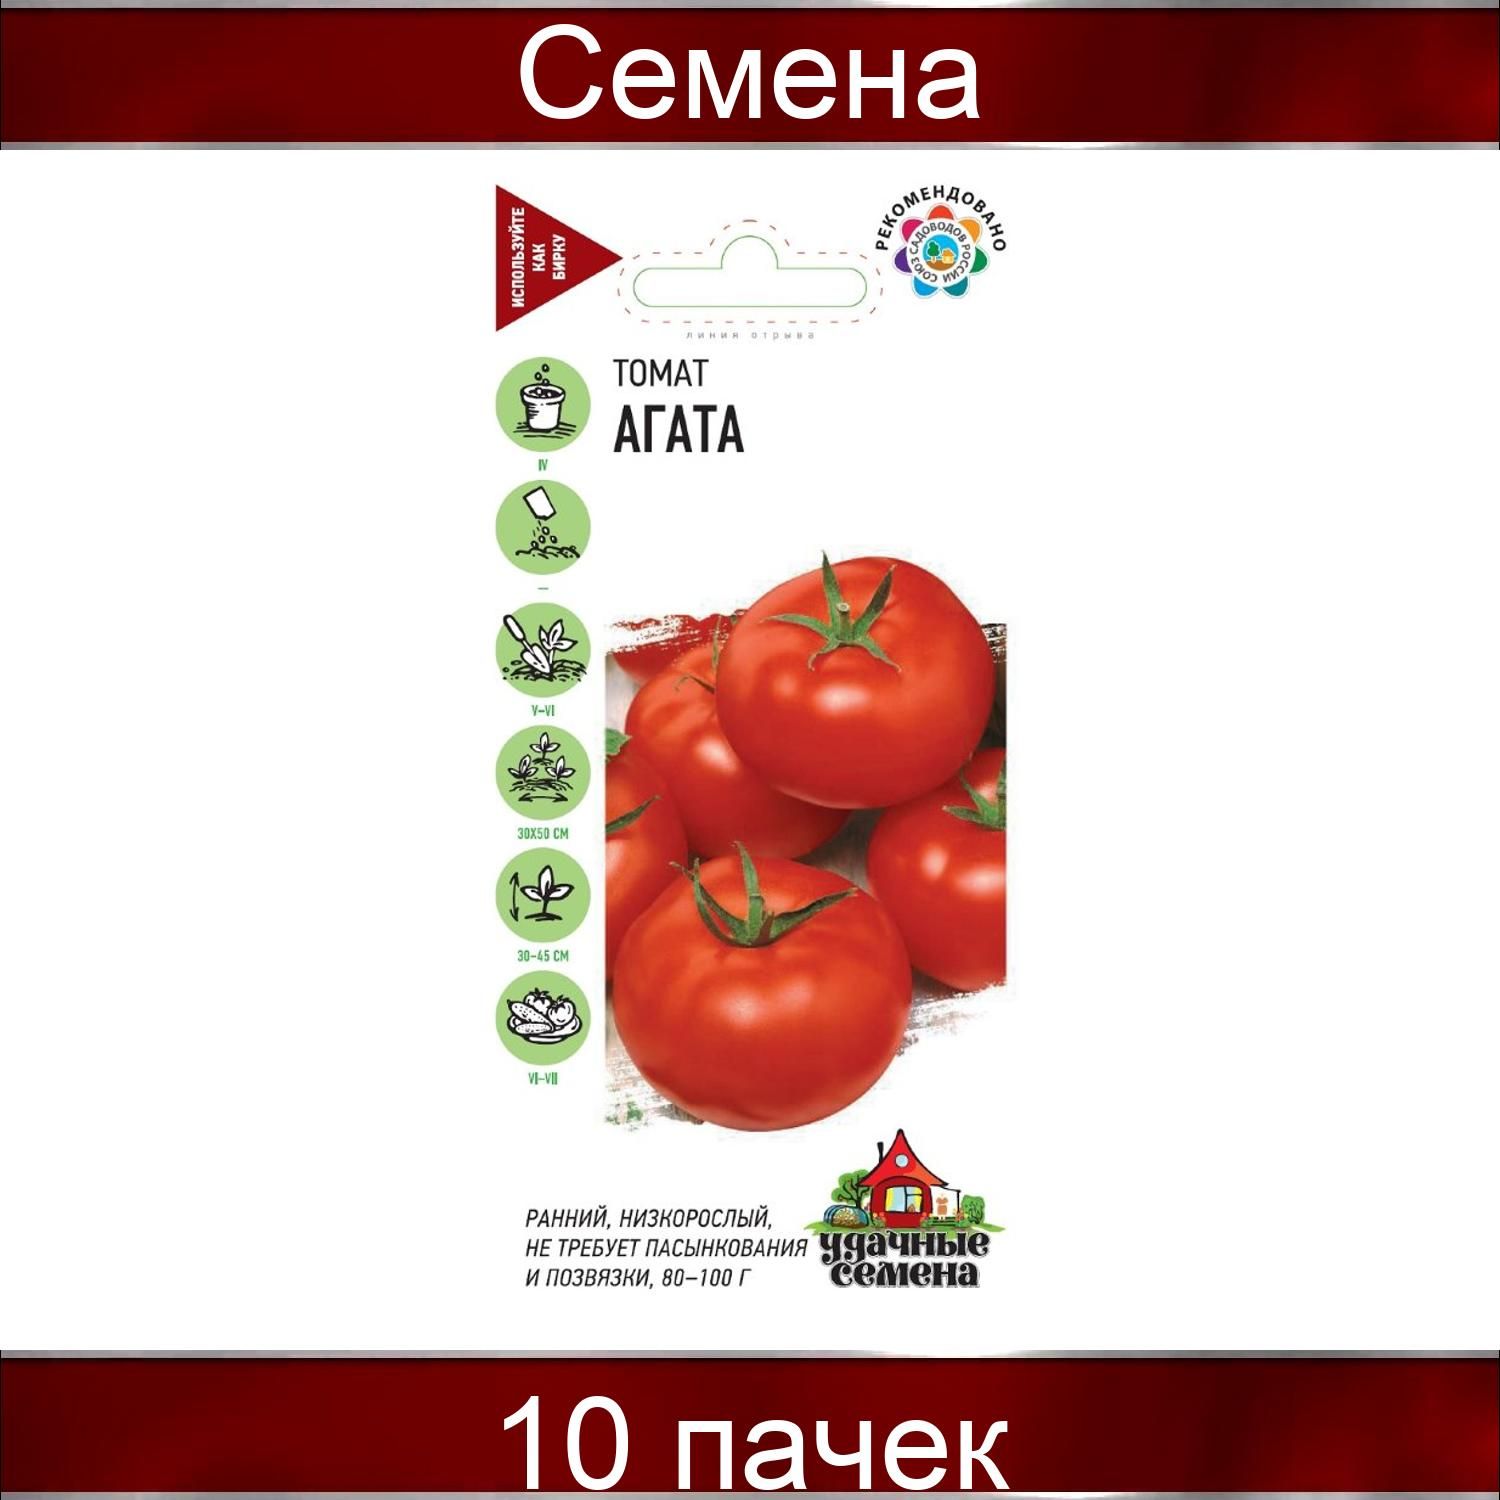 Гавриш томат дар Заволжья